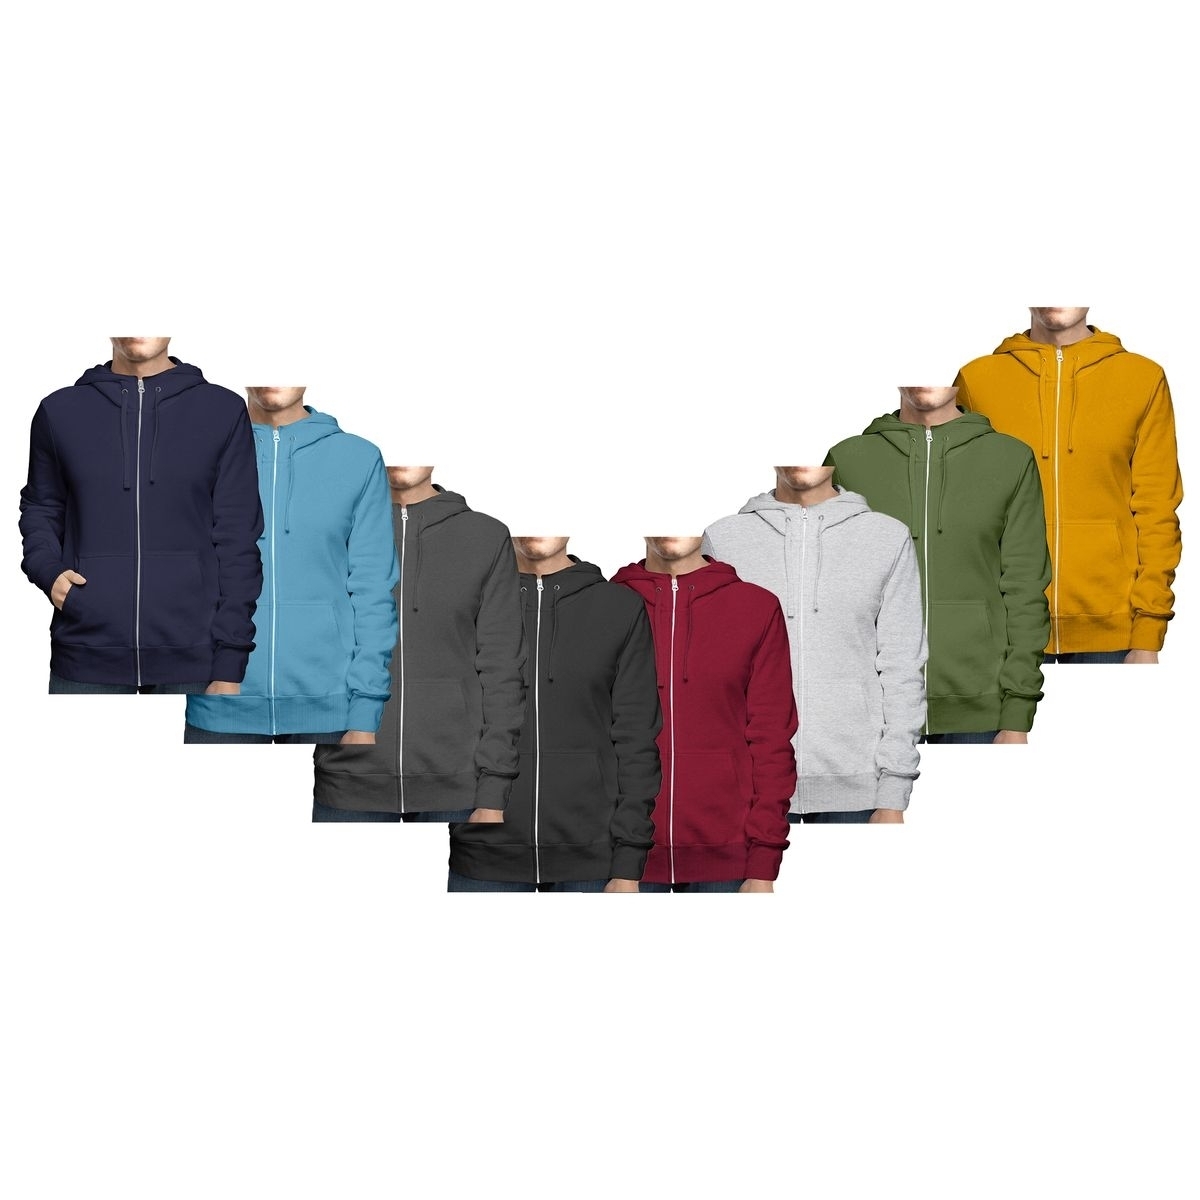 2-Pack: Men's Winter Warm Soft Cozy Full Zip-Up Fleece Lined Hoodie Sweatshirt - Xx-large